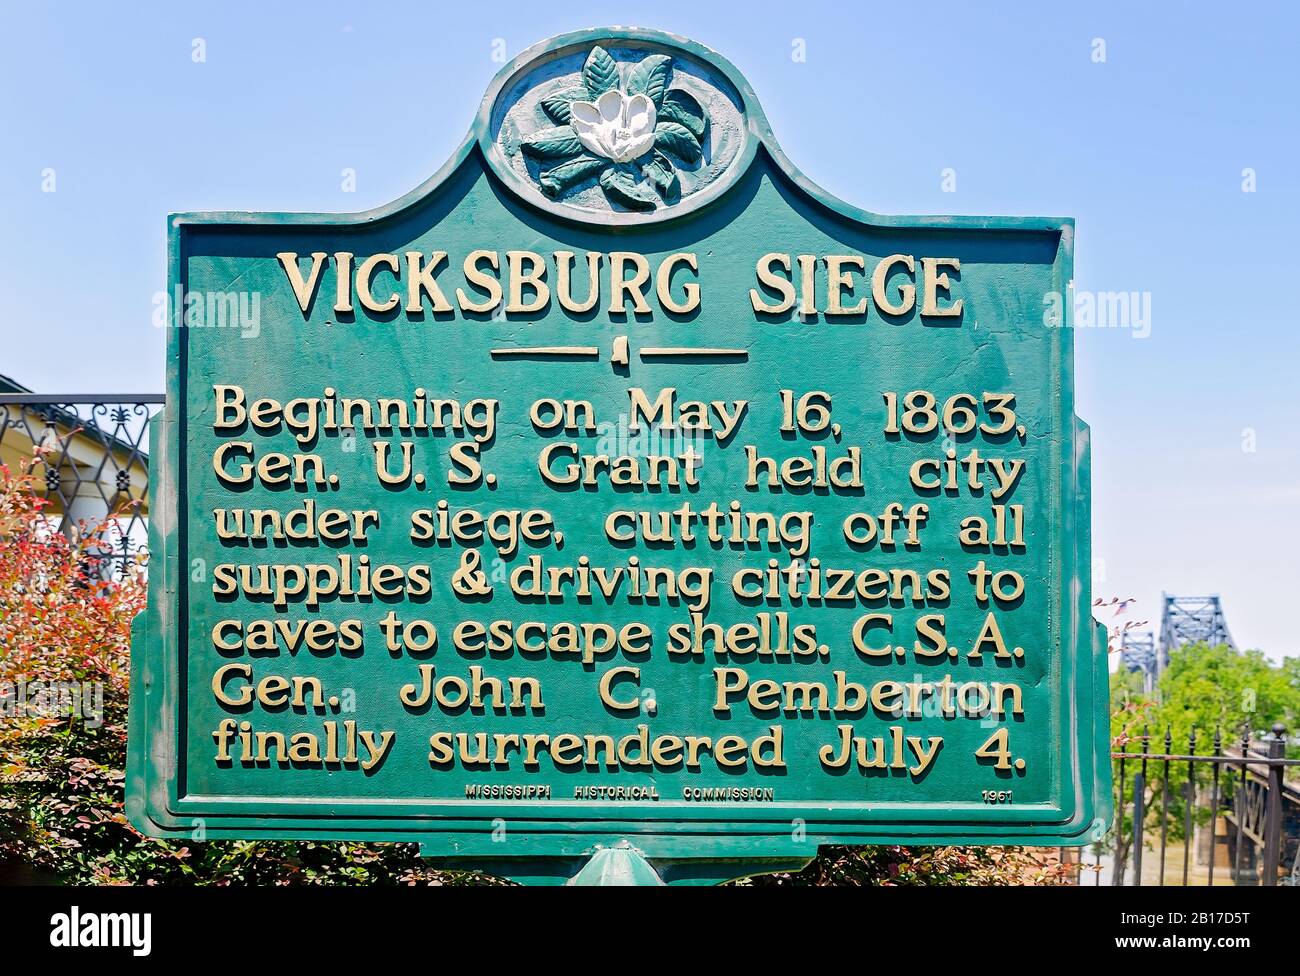 Un marqueur historique donne des informations sur le siège de Vicksburg Siege à Vicksburg, dans le centre d’accueil de Vicksburg, au Mississippi. Banque D'Images